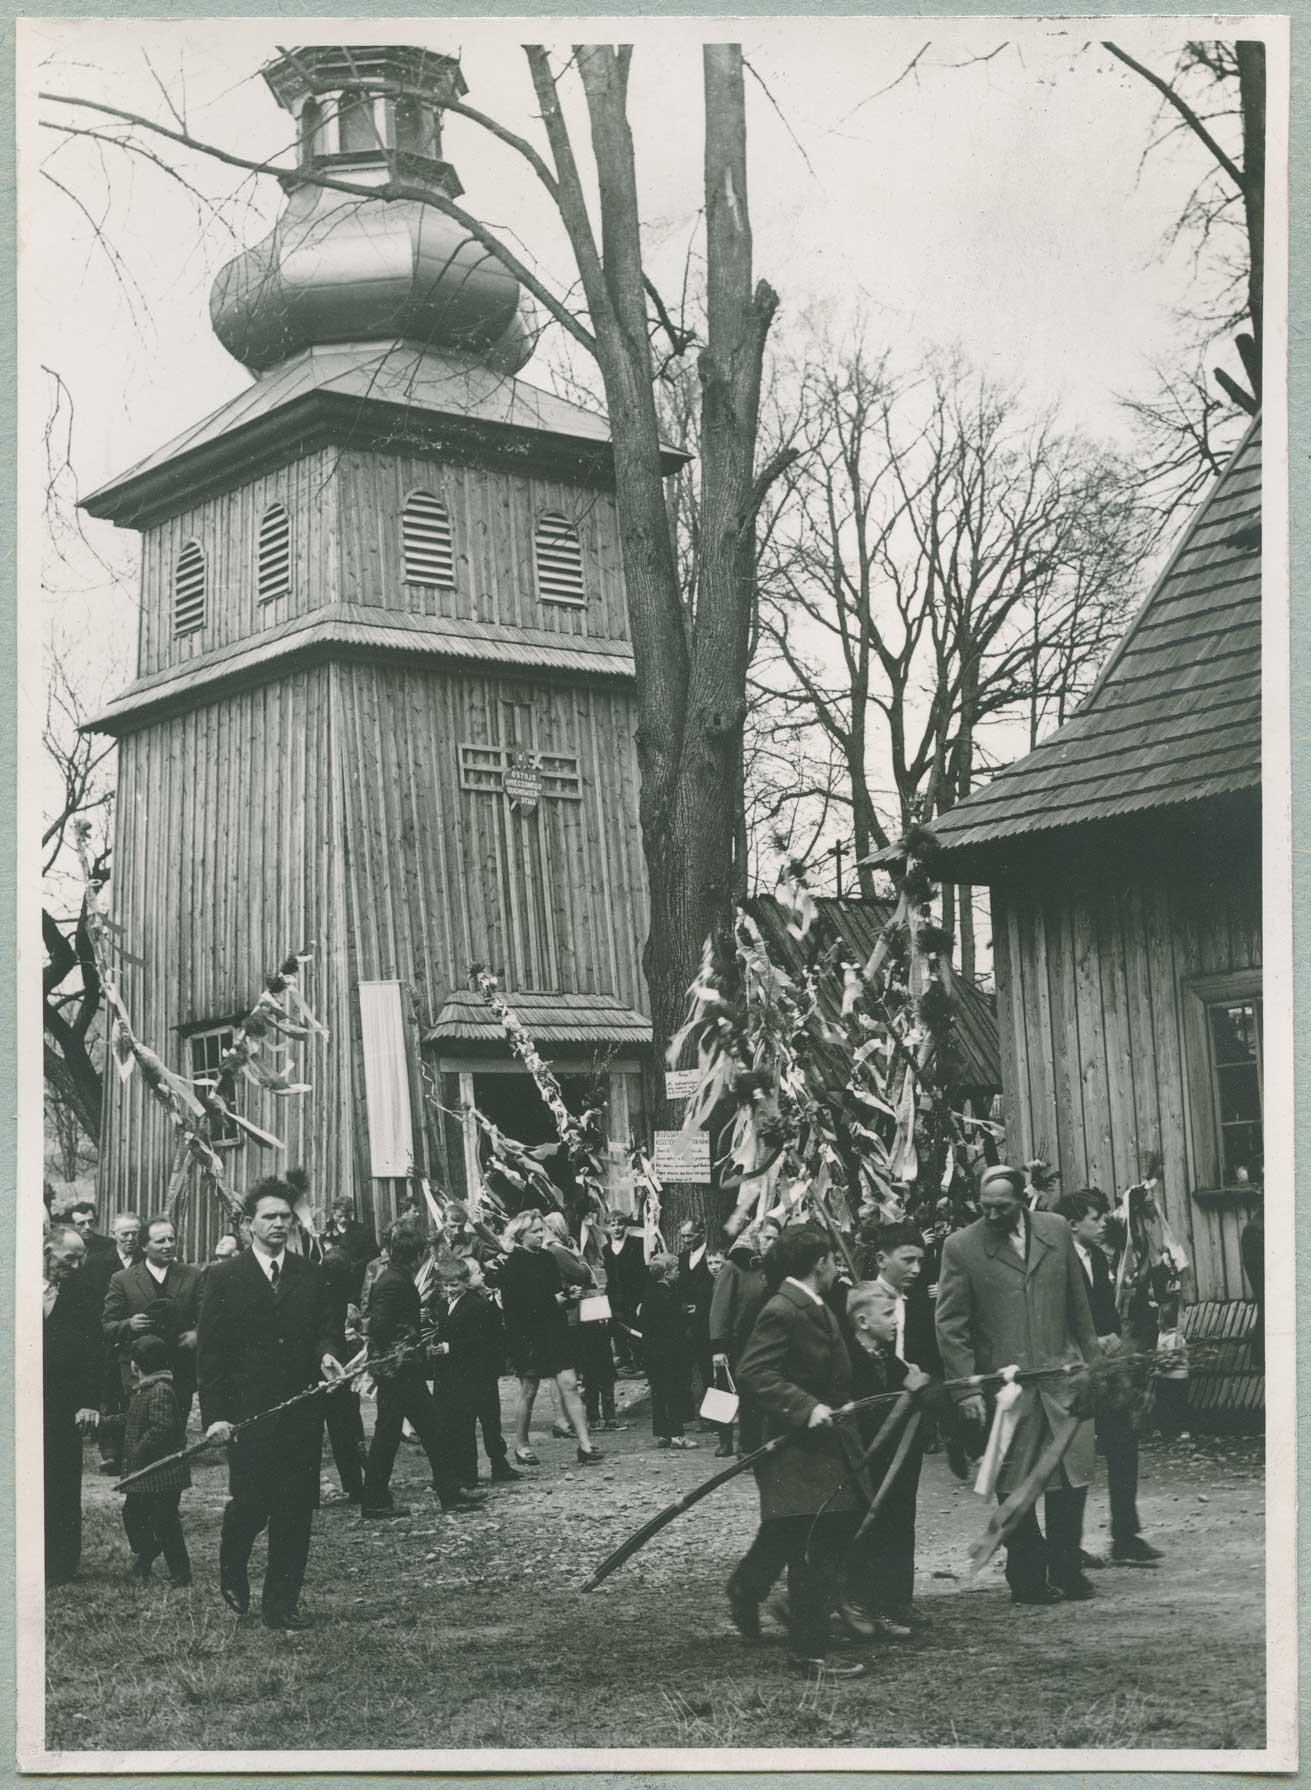 Duża grupa ludzi ubranych odświętnie przed kościołem z palmami